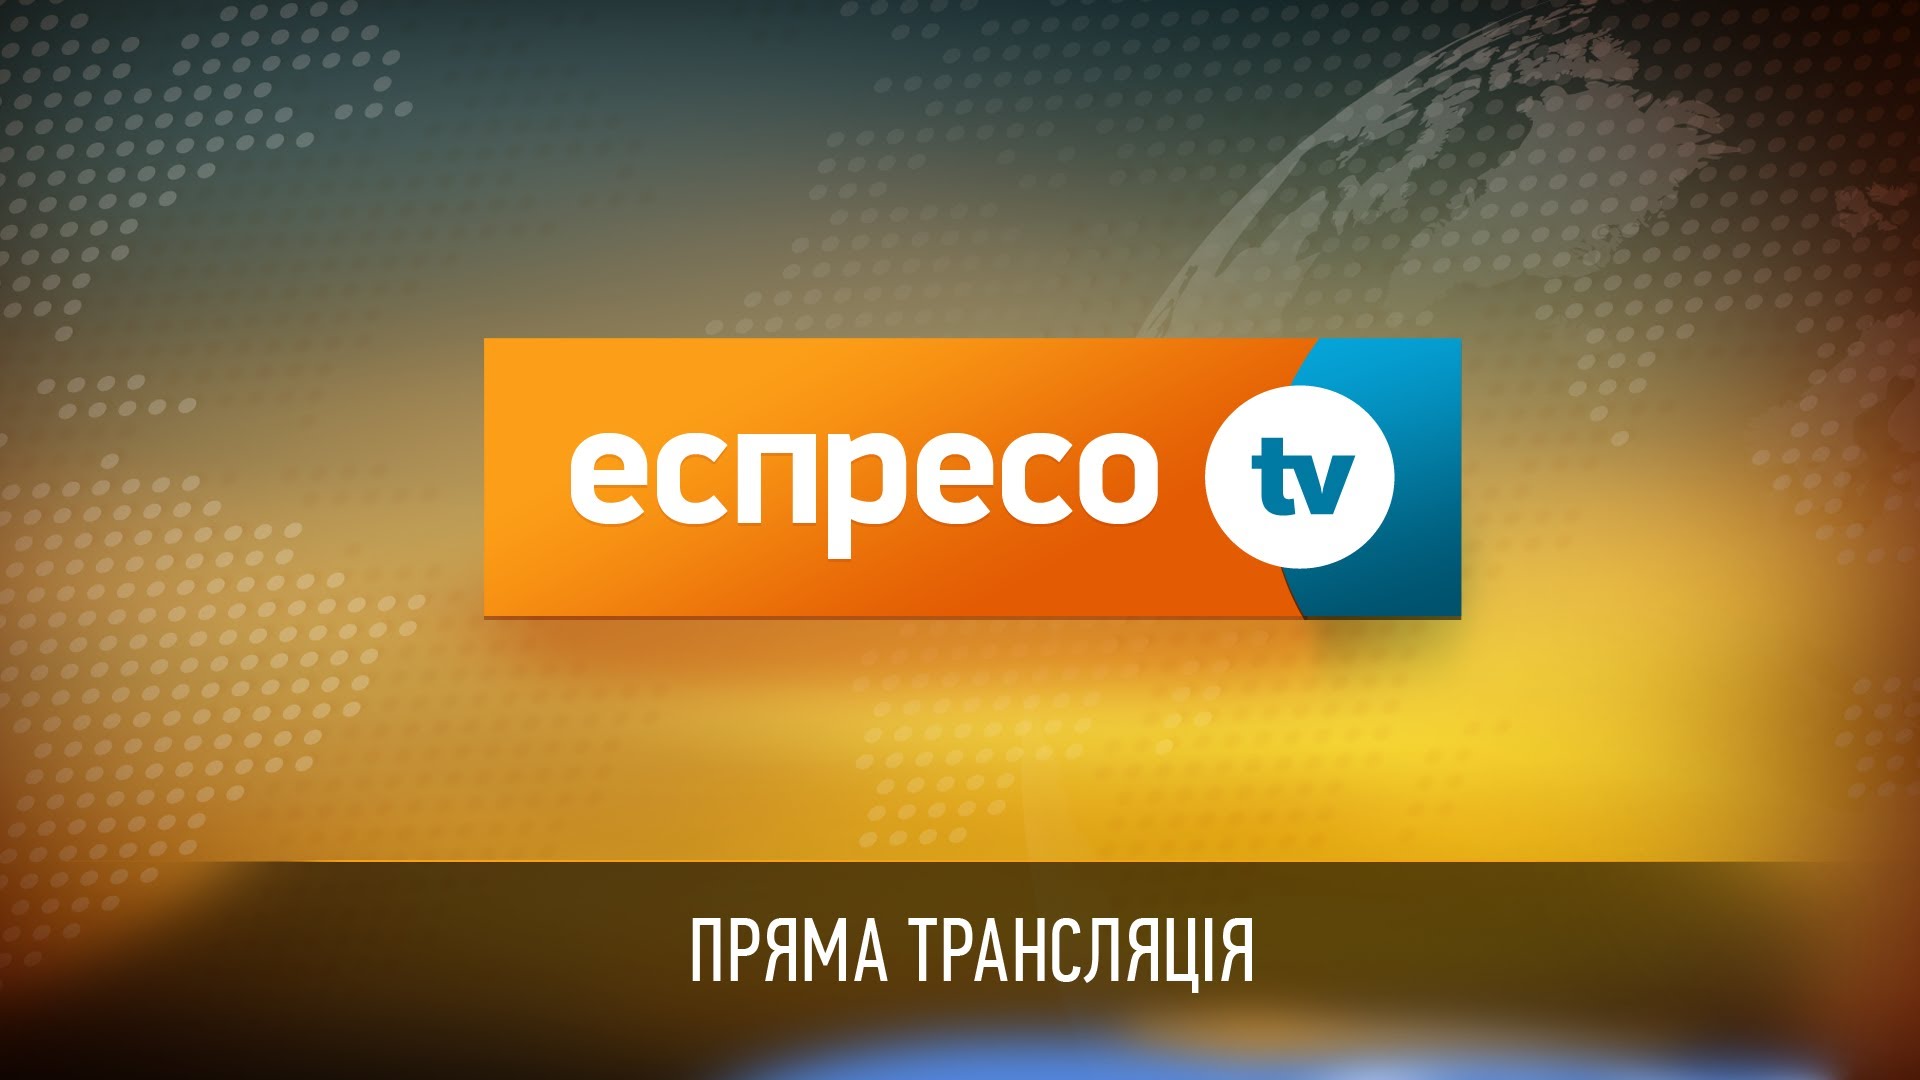 «Беркут» кинув газову гранату в знімальну групу «Еспресо.TV» і затримав оператора каналу (ОНОВЛЕНО)